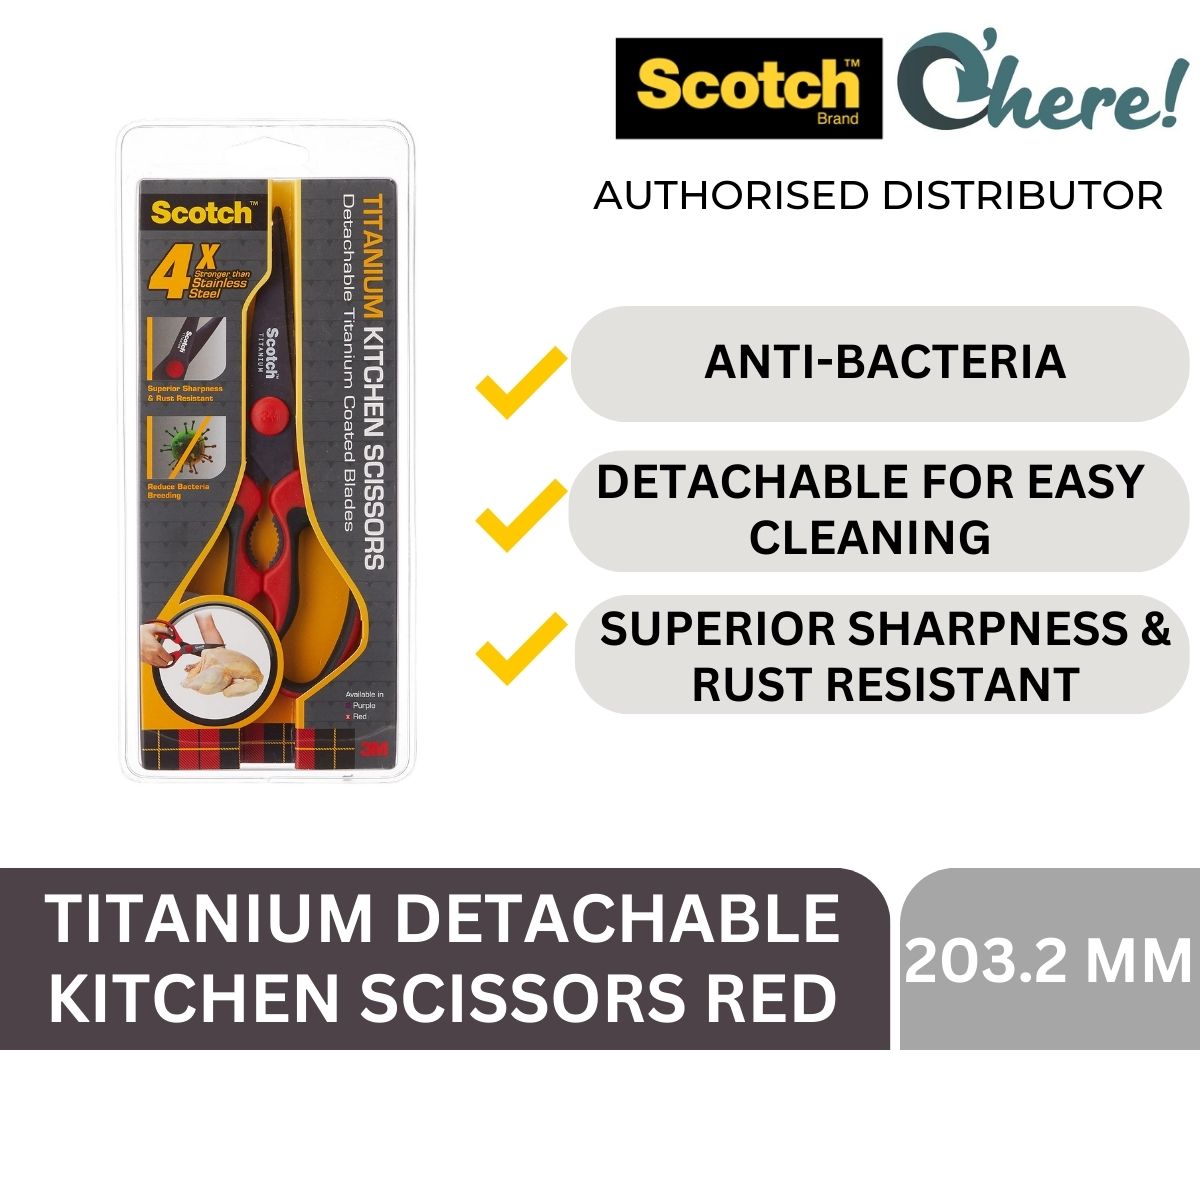 3M Scotch Anti-Bacterial Titanium Detachable Kitchen Scissors Red